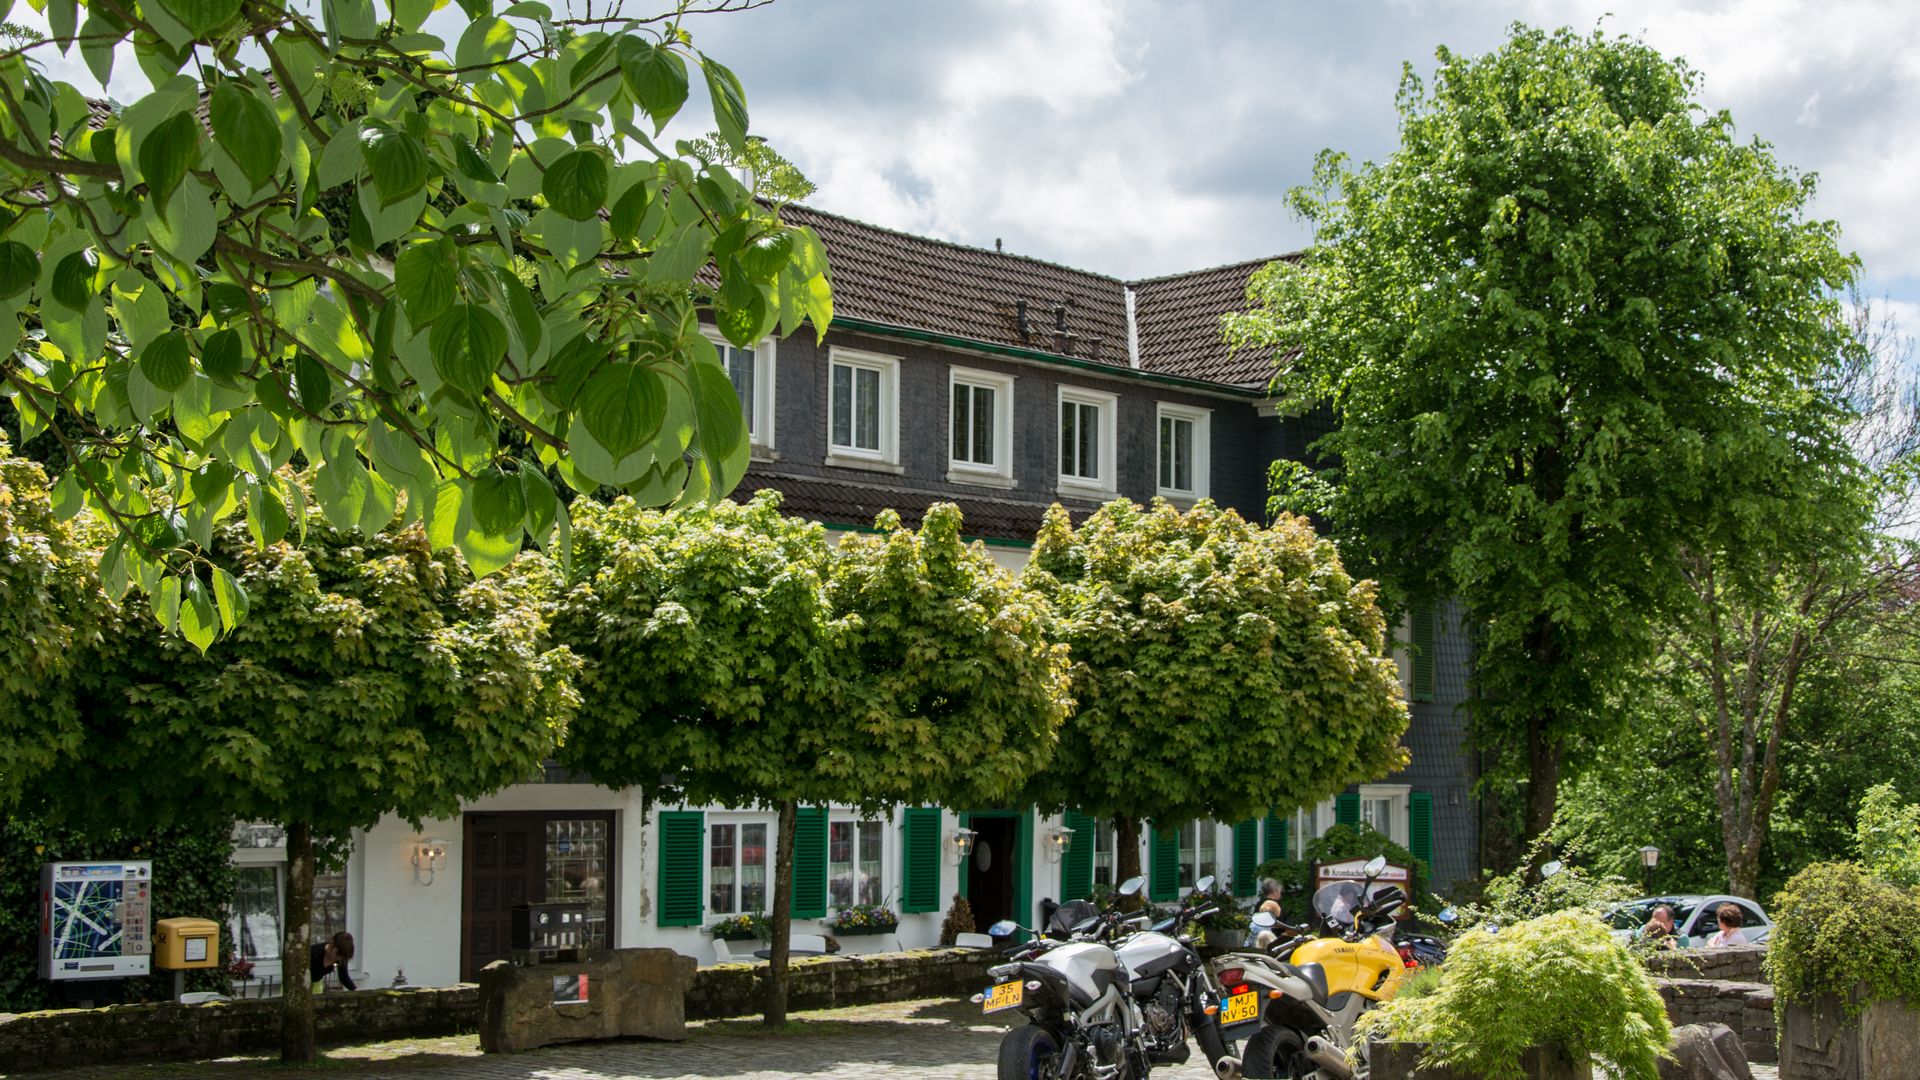 Restaurant mit Biergarten hinter einigen Bäumen auf einem Dorfplatz